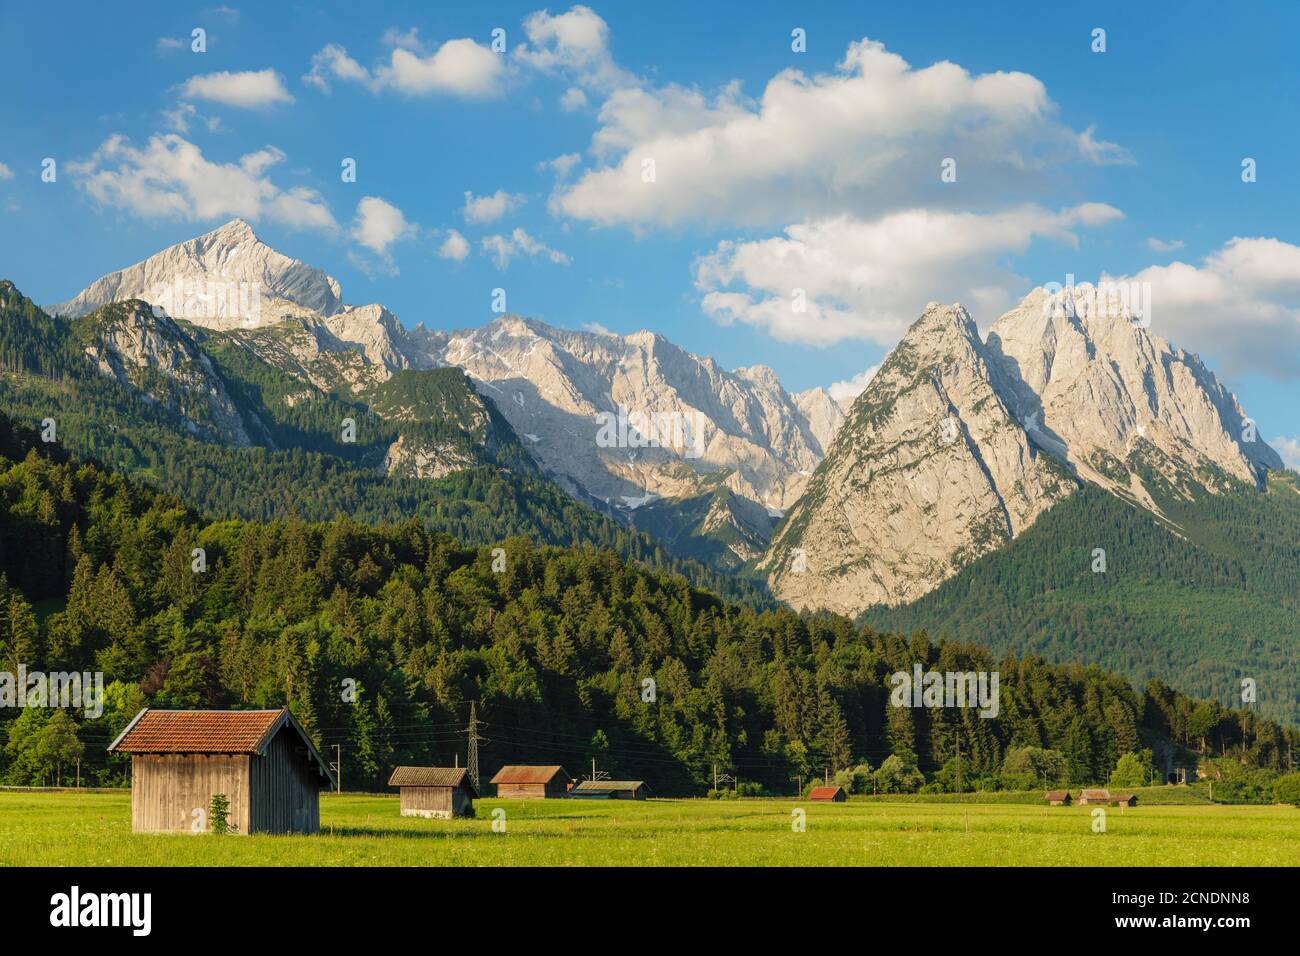 Hay graneros en el sendero de Hammersbach contra la cordillera de Wetterstein, Garmisch-Partenkirchen, Werdenfelser Land, Alta Baviera, Alemania, Europa Foto de stock